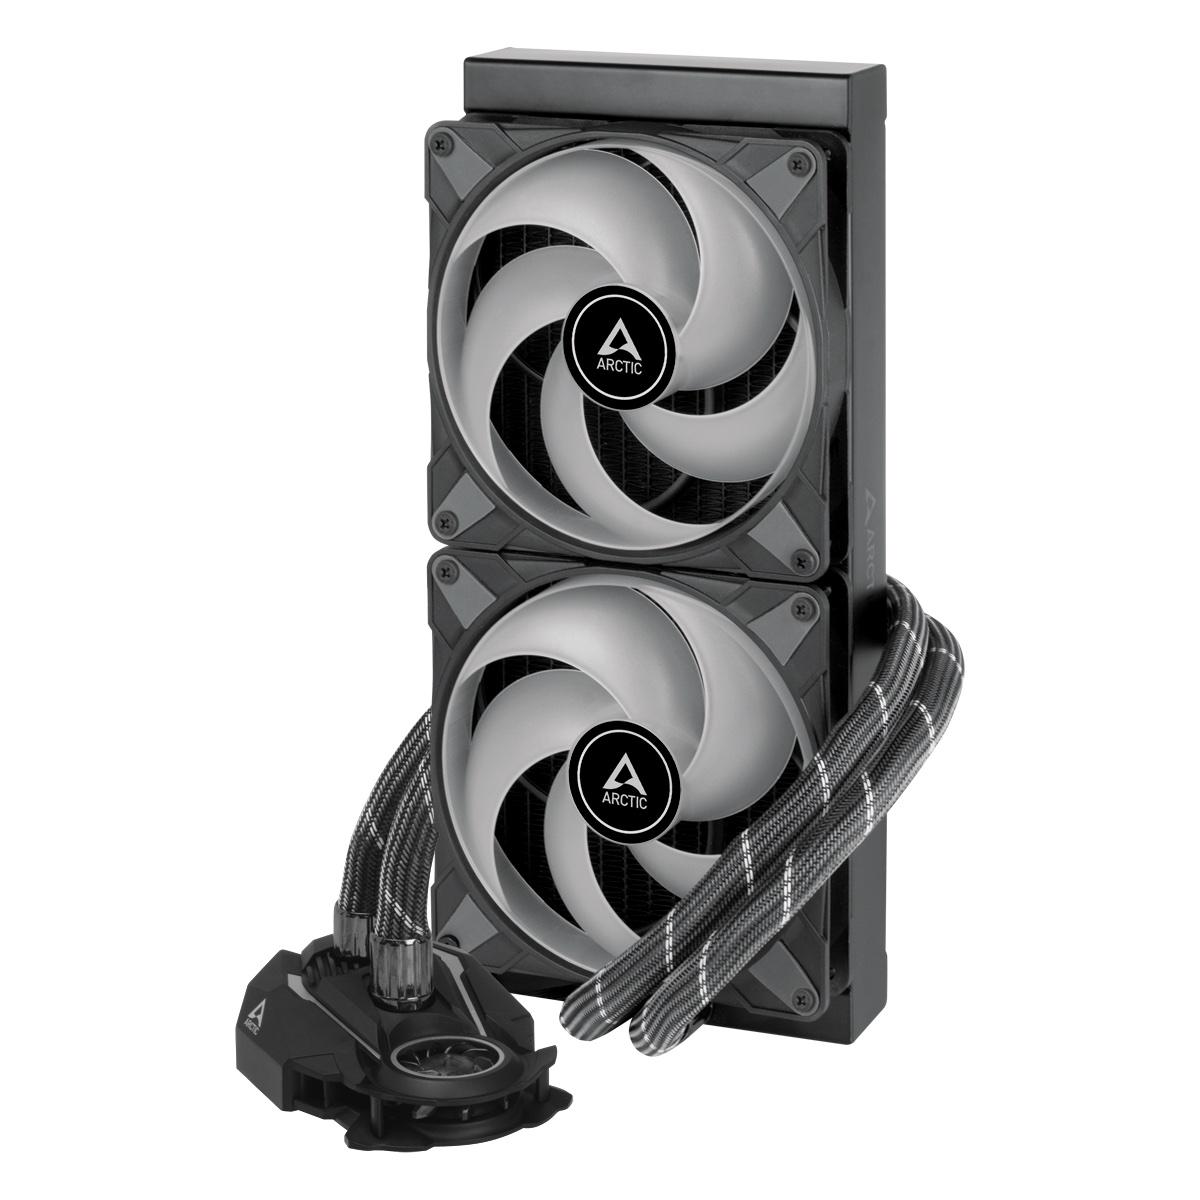 Охладител за процесор Arctic Freezer II A-RGB (280mm), водно охлаждане, ACFRE00106A AMD/Intel-3